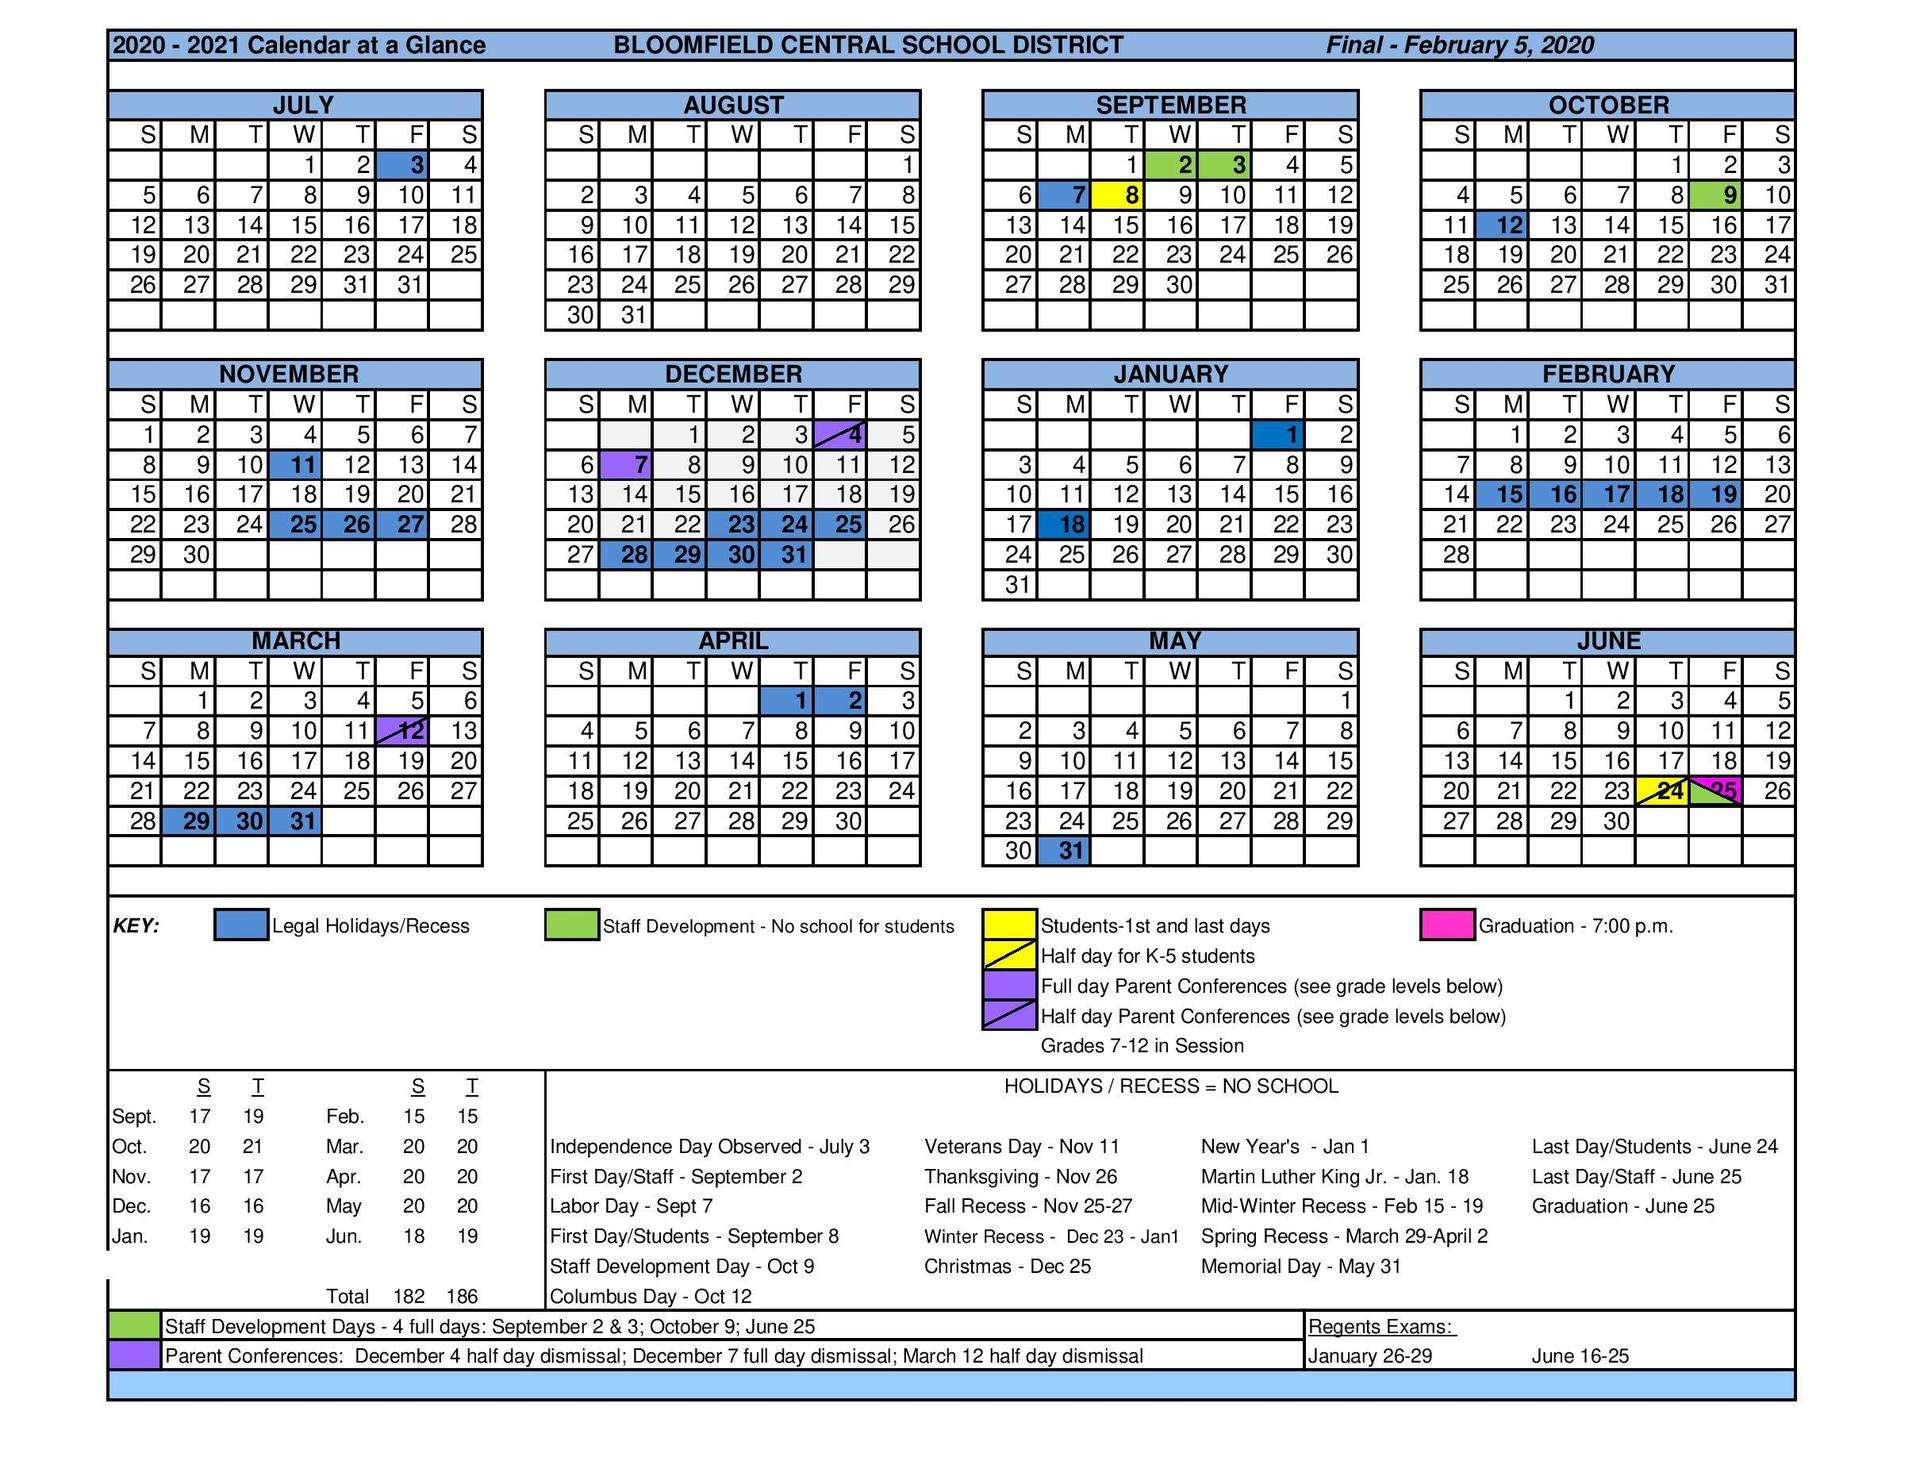 Central Schools Calendar - Veda Allegra